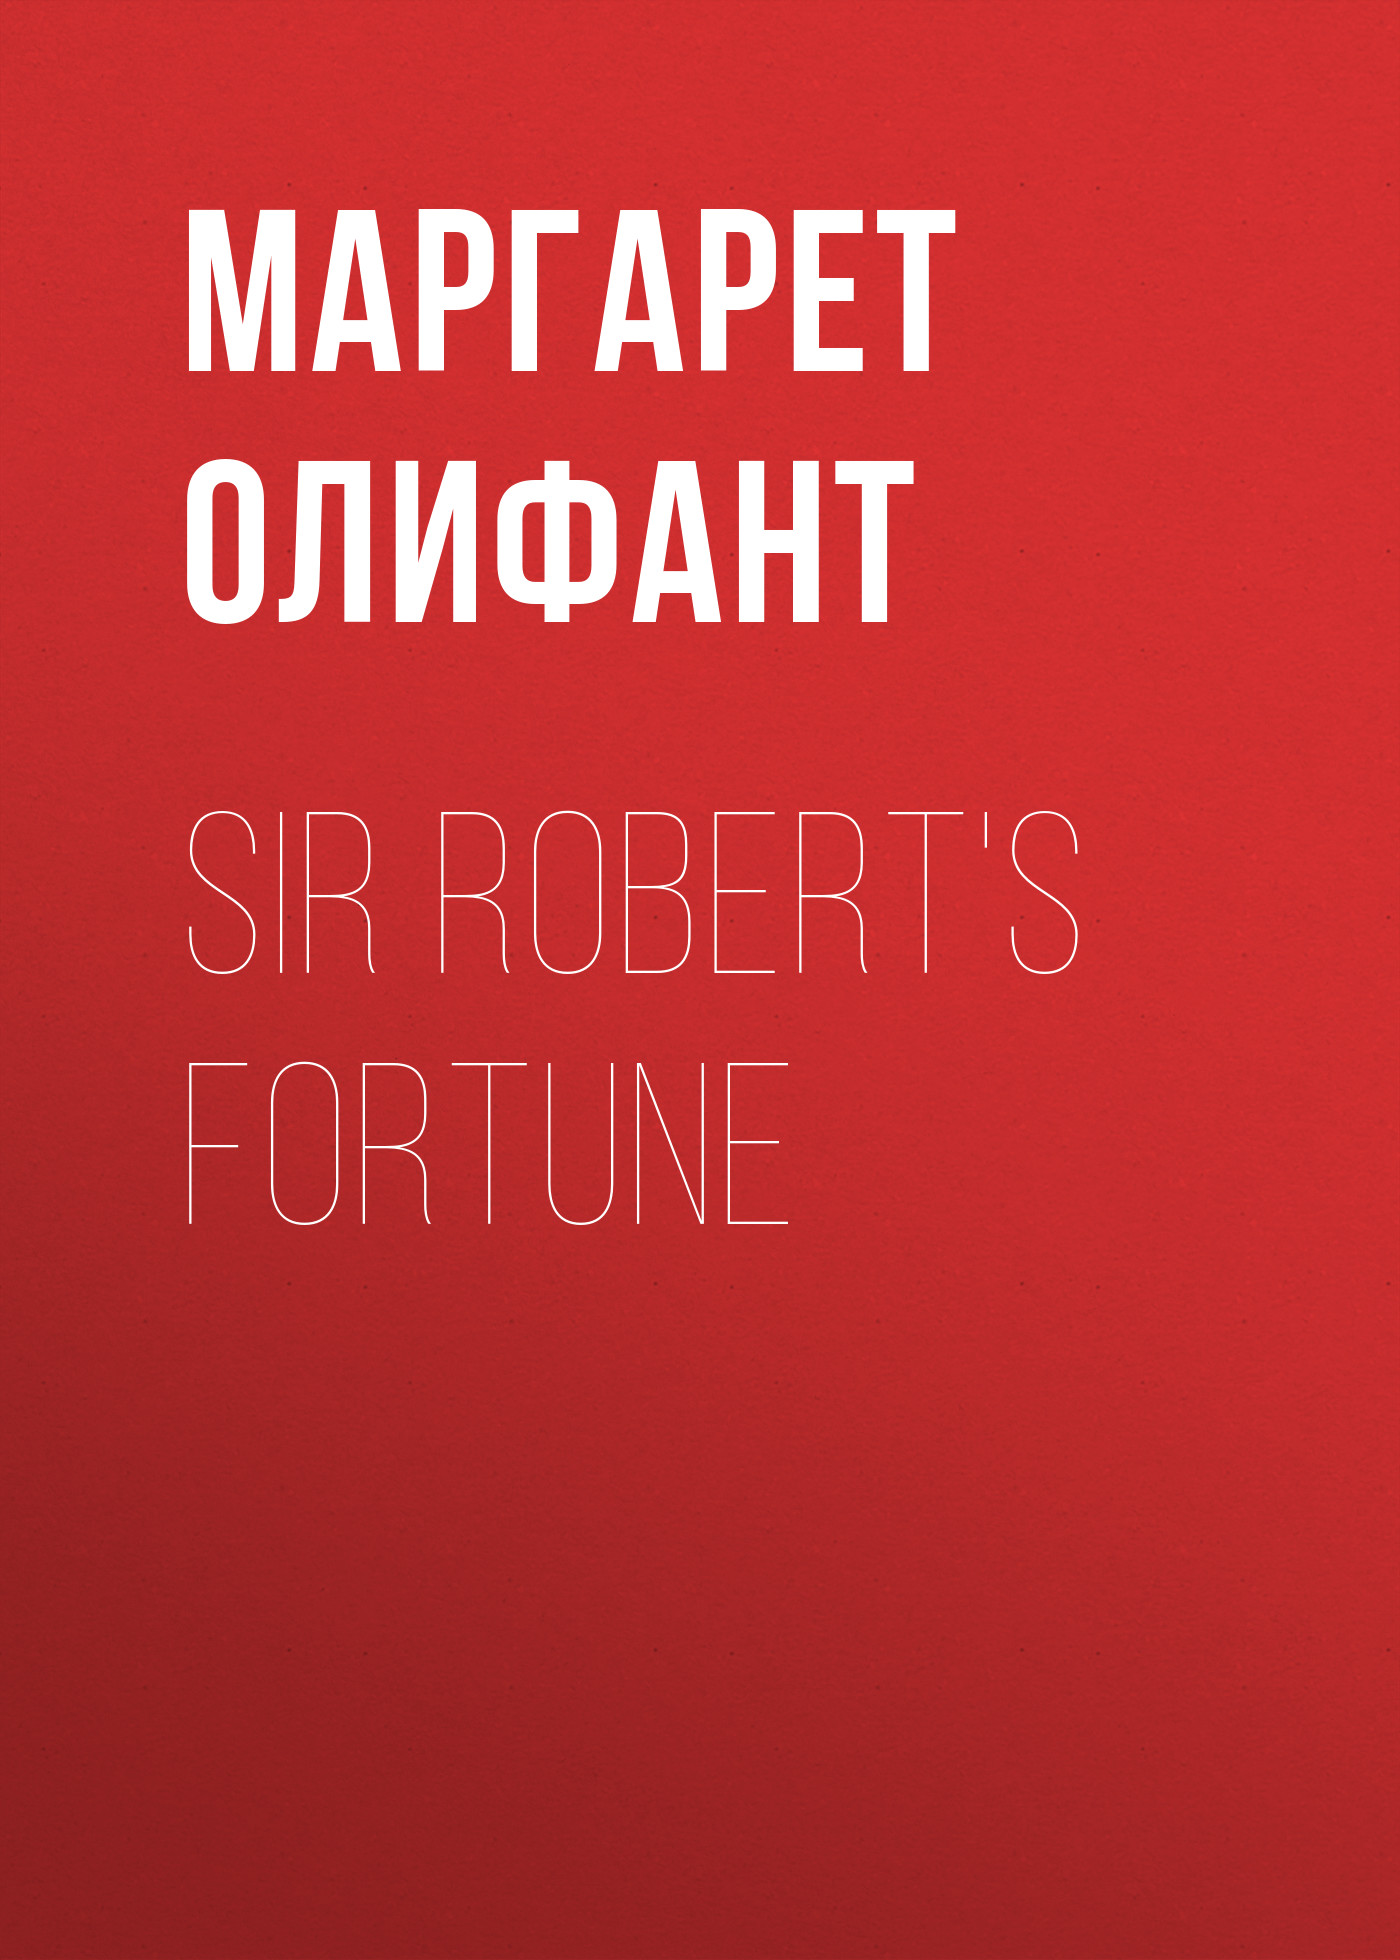 Книга Sir Robert's Fortune из серии , созданная Маргарет Олифант, может относится к жанру Зарубежная классика, Литература 19 века, Зарубежная старинная литература. Стоимость электронной книги Sir Robert's Fortune с идентификатором 34843614 составляет 0 руб.